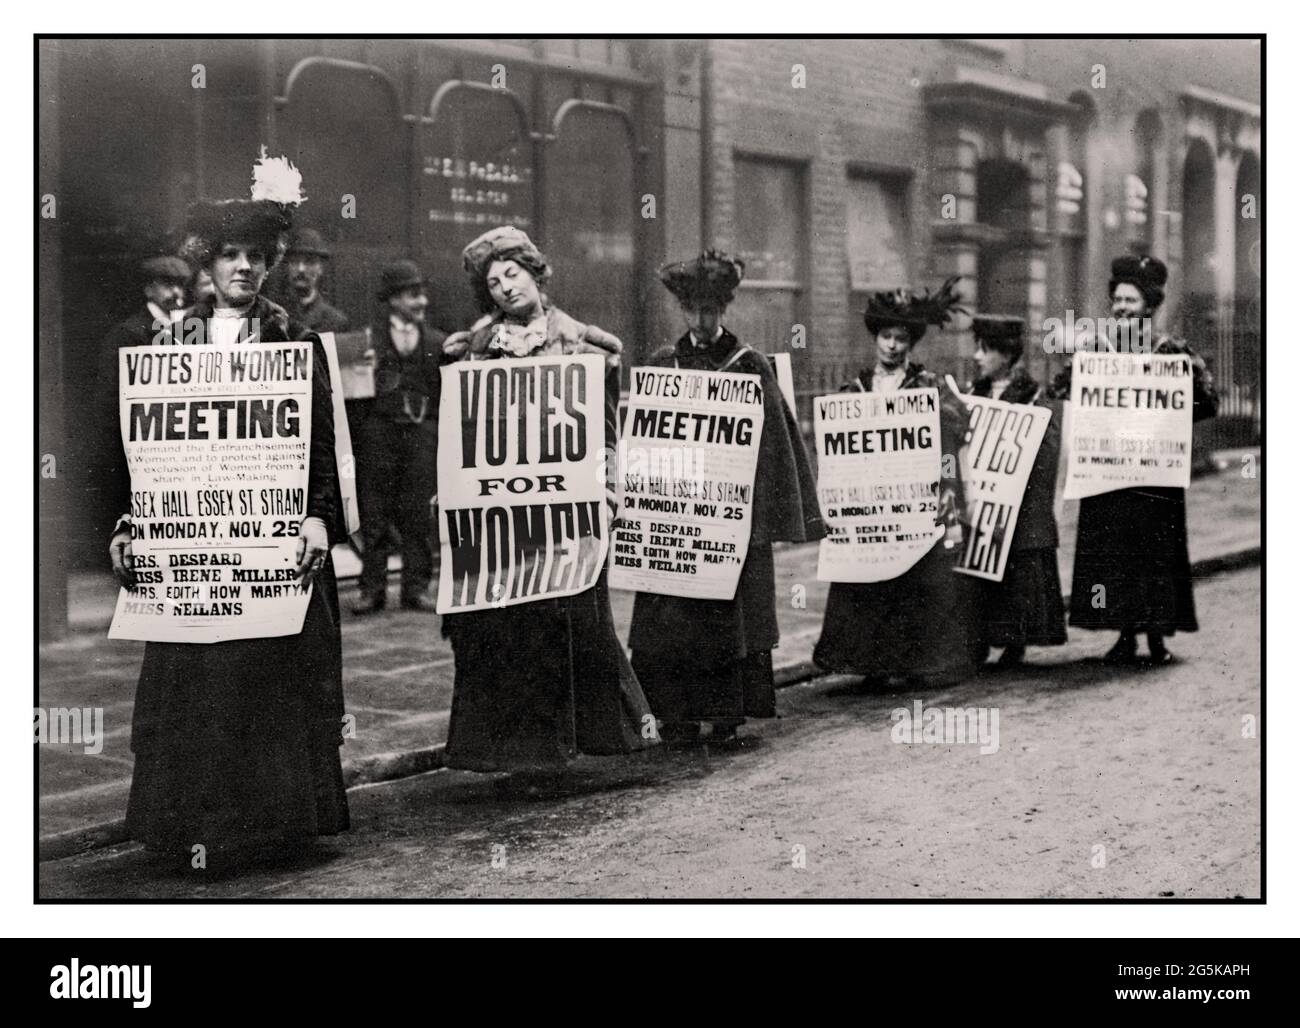 SUFFRAGIO 1900 di Londra UK Suffragettes, che ha tenuto campagne a Londra per promuovere e pubblicizzare il suffragio britannico ‘Meeting’’ ‘voti per le donne’ all’Essex Hall Essex Street Strand London UK Foto Stock